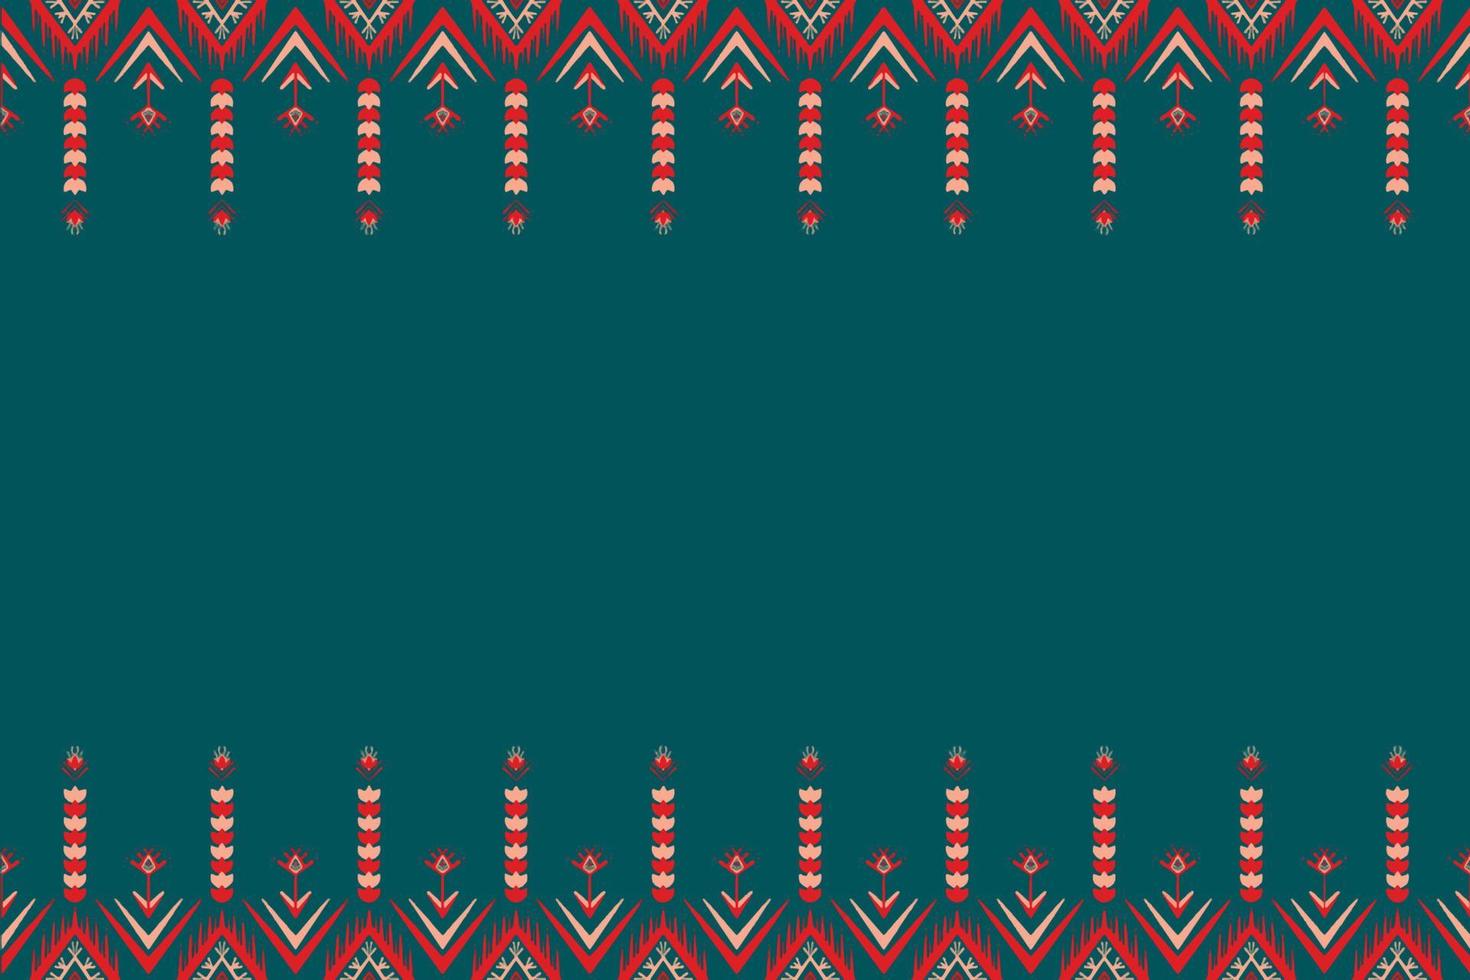 rode en oranje bloem op blauwe wintertaling. geometrische etnische oosterse patroon traditioneel ontwerp voor achtergrond, tapijt, behang, kleding, verpakking, batik, stof, vector illustratie borduurstijl